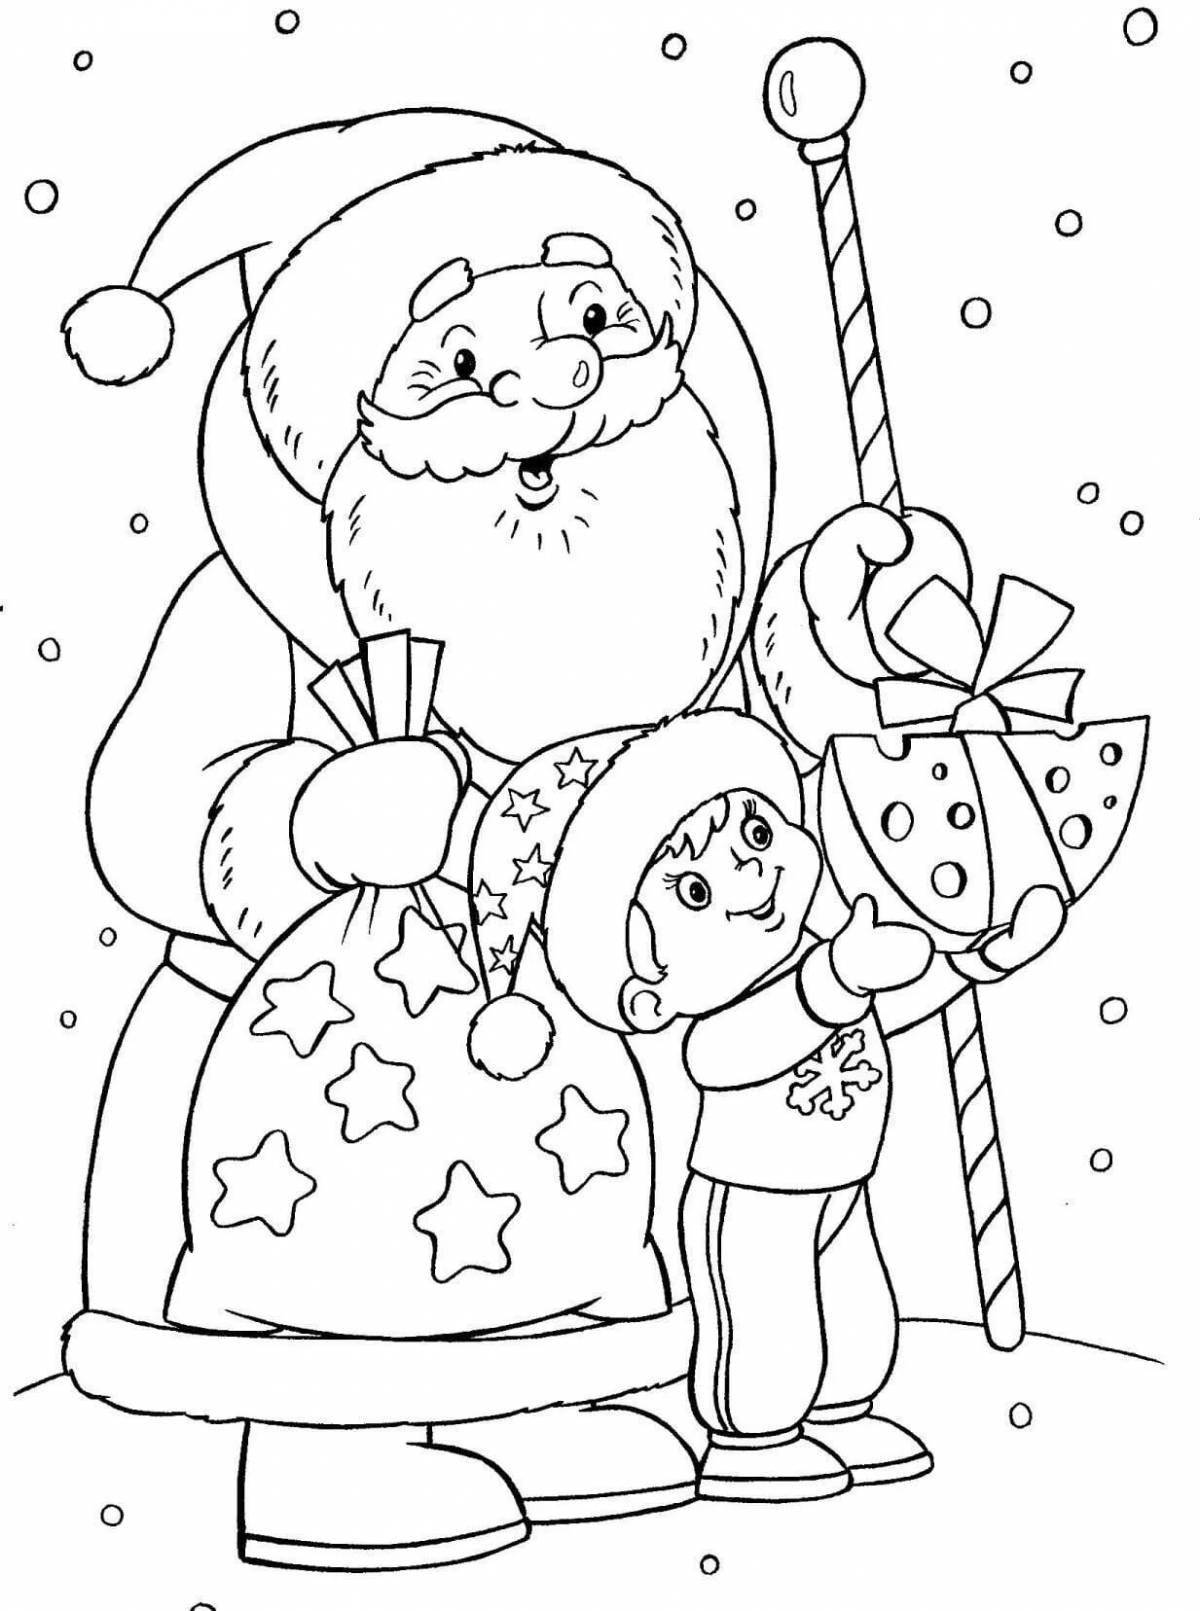 Magical santa claus coloring book for kids